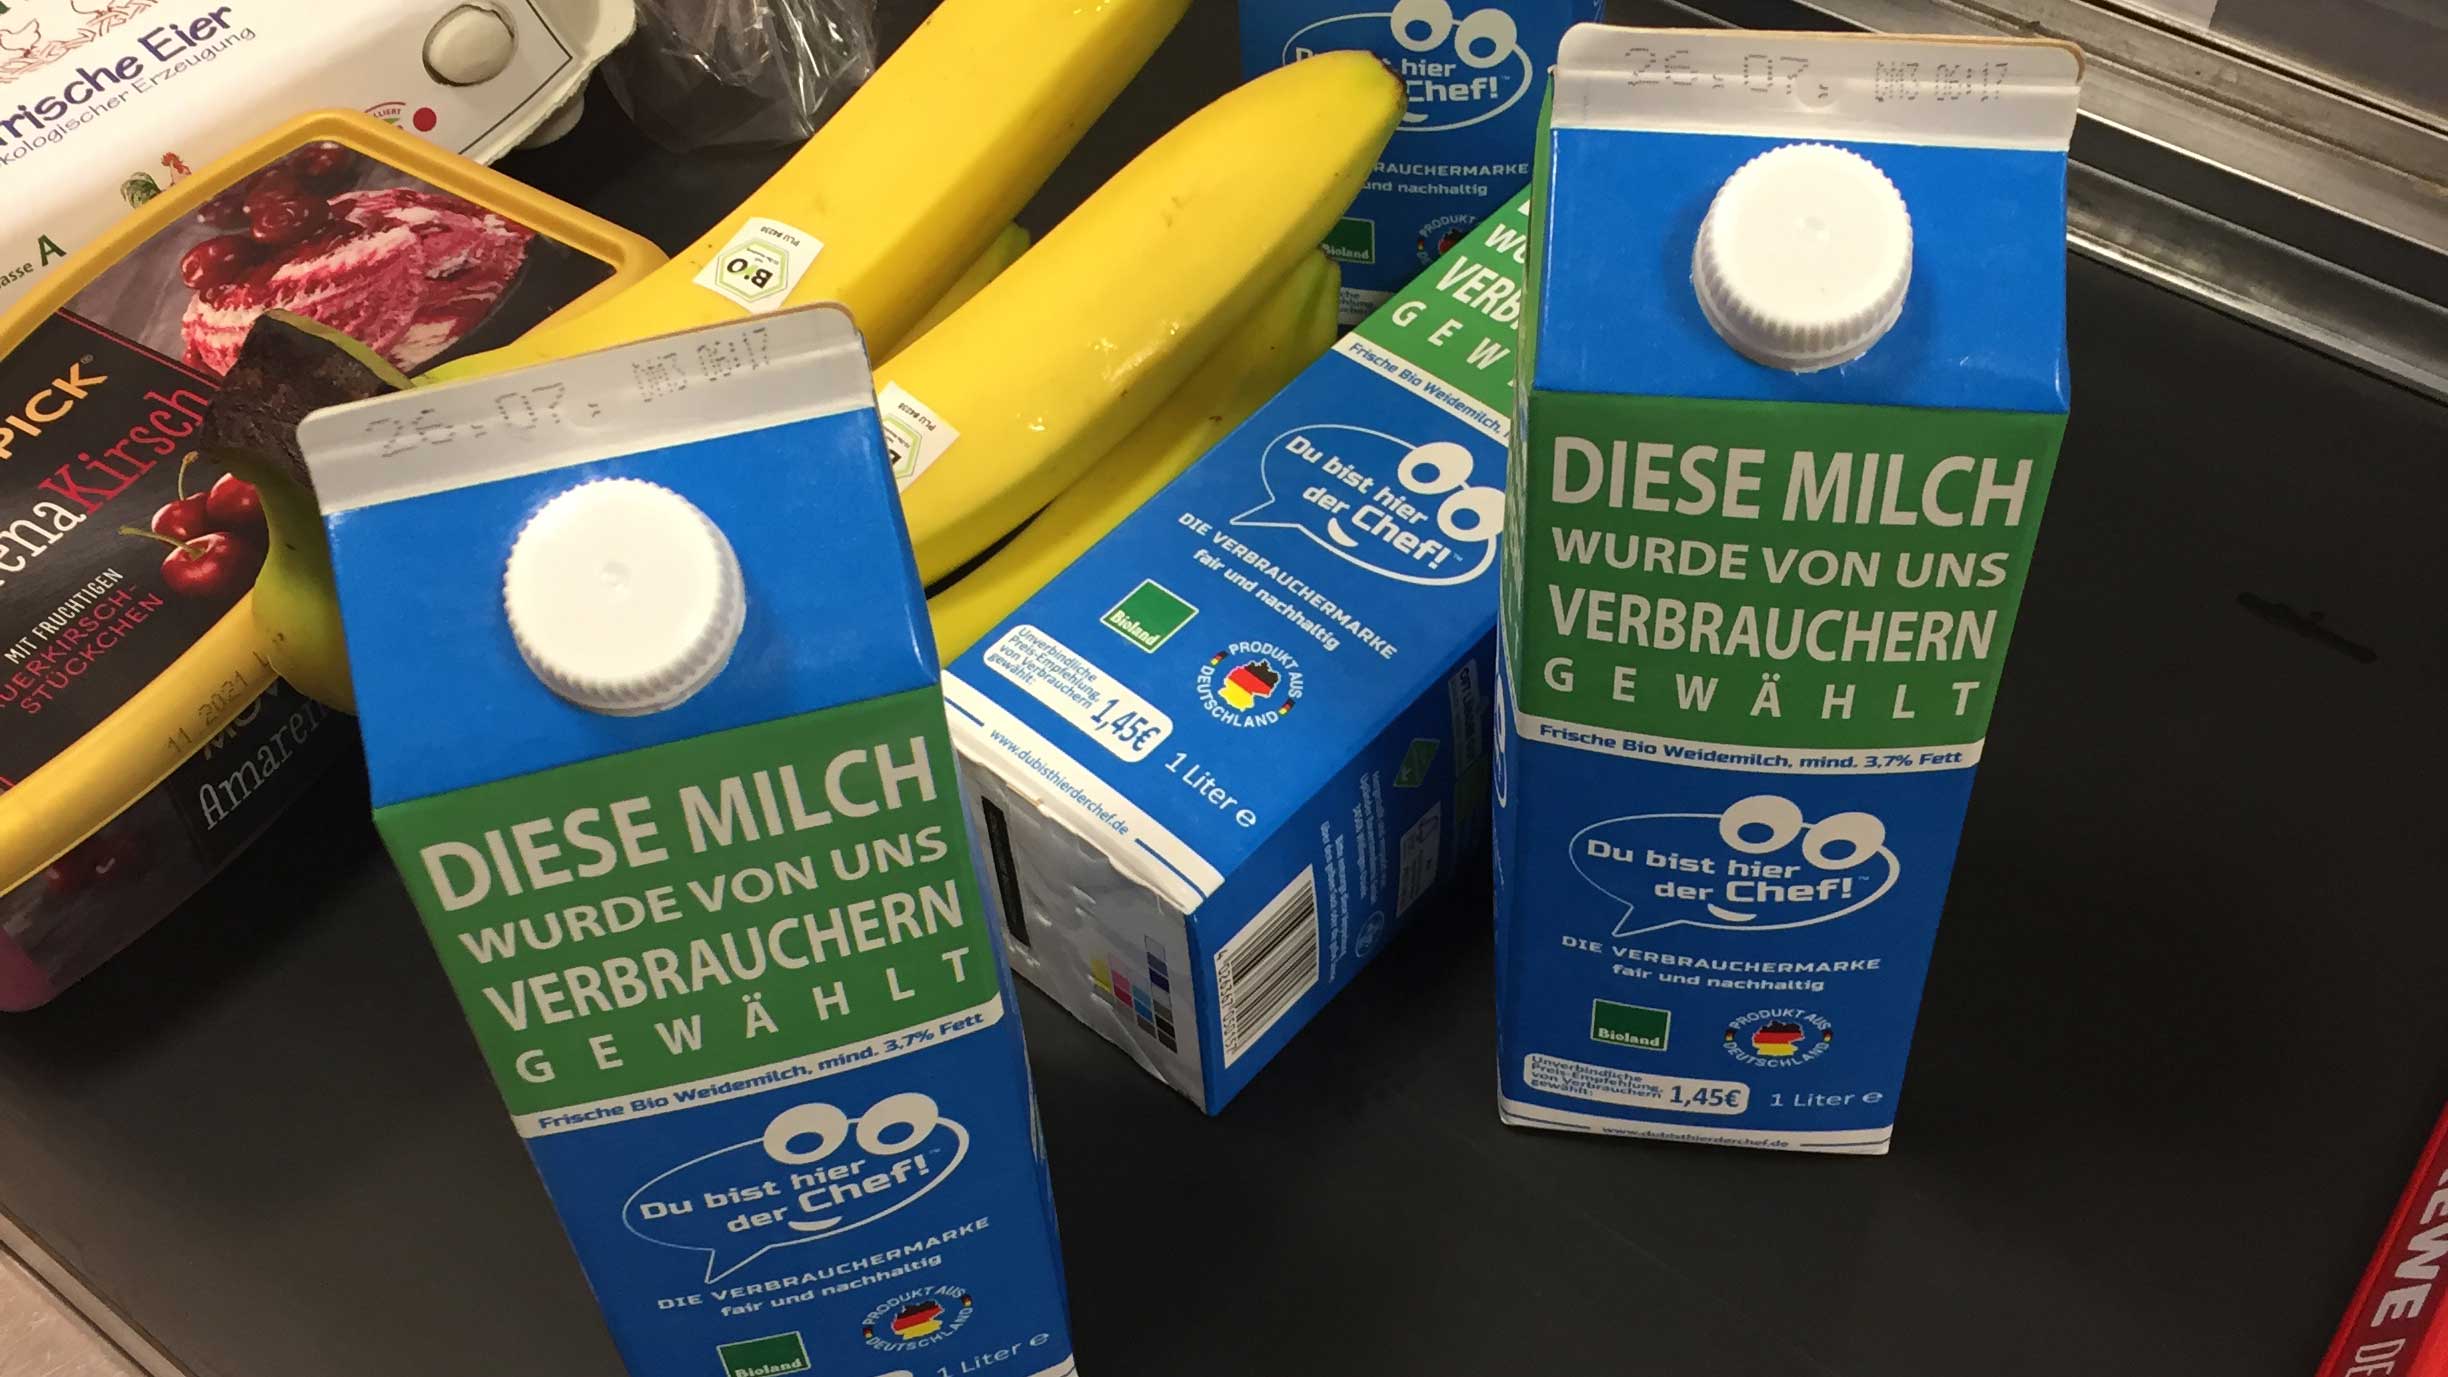 Diese Milch wurde von uns Verbrauchern gewählt